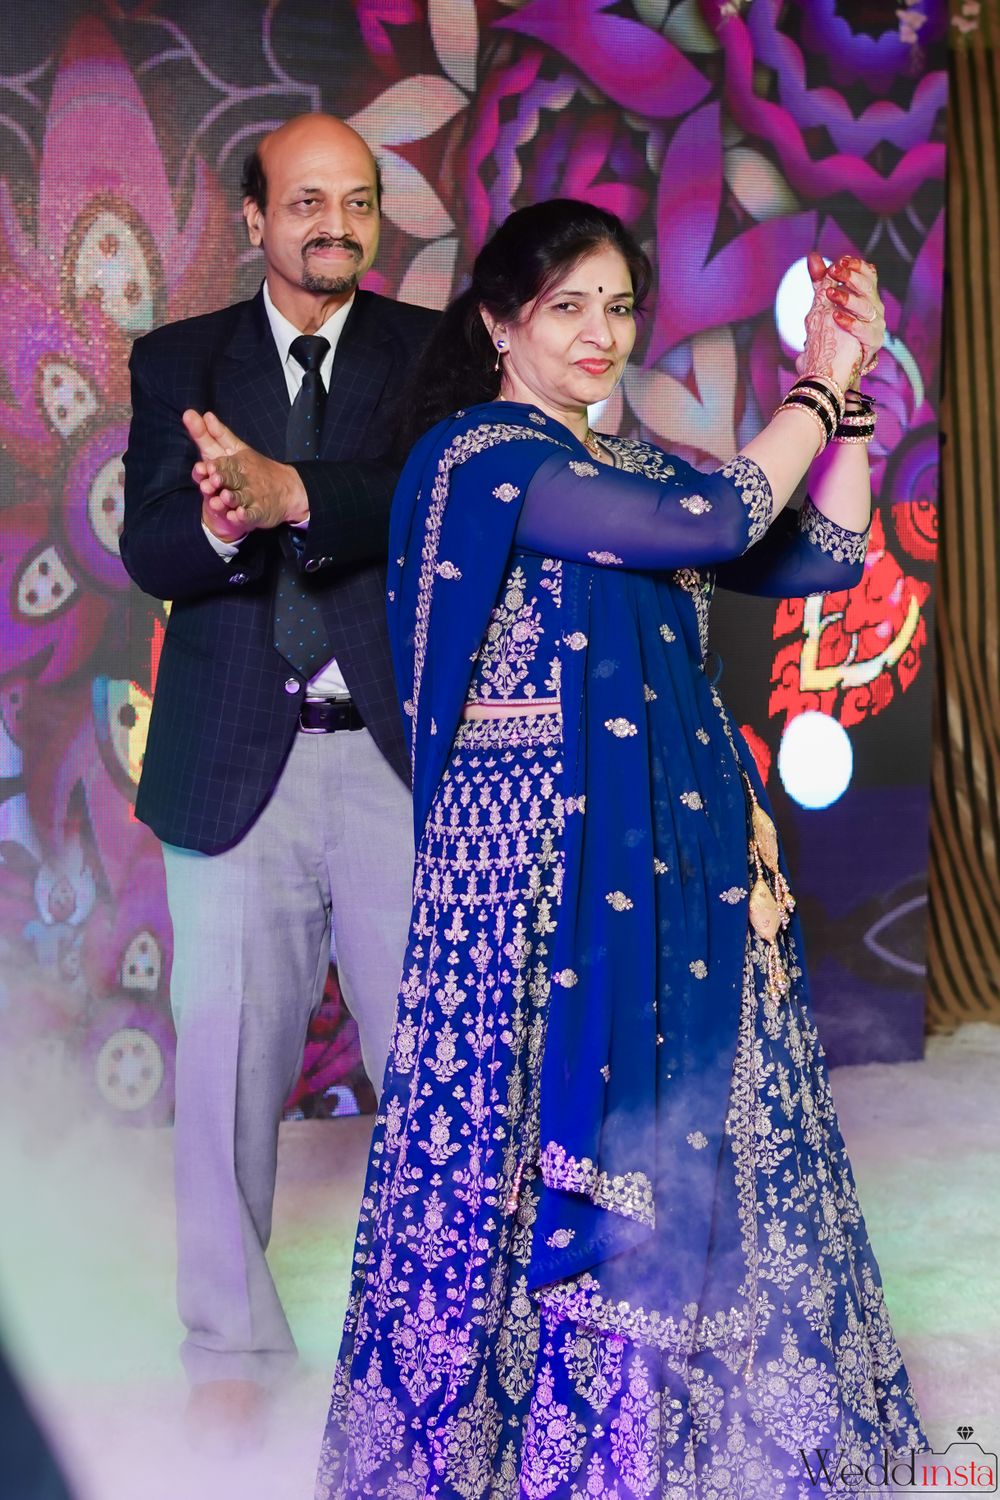 Photo From Sumanyu & Radhika - By The Wedding Dancity